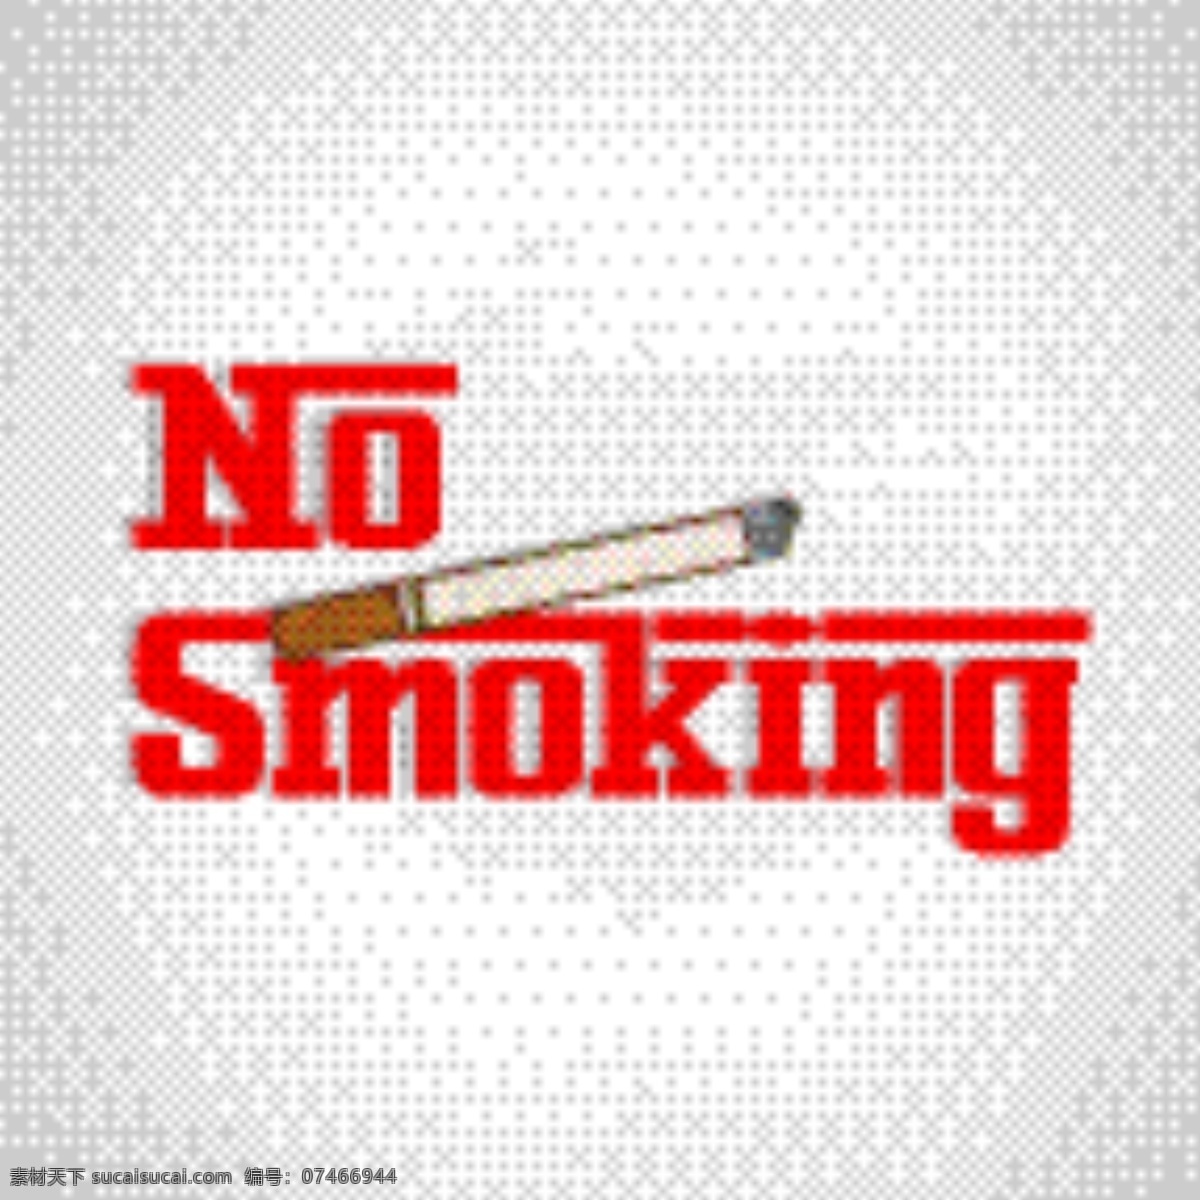 禁止 吸烟 广告 矢量 模板下载 禁烟标志 香烟 禁止吸烟 吸烟有害健康 禁烟公益广告 生活百科 矢量素材 白色